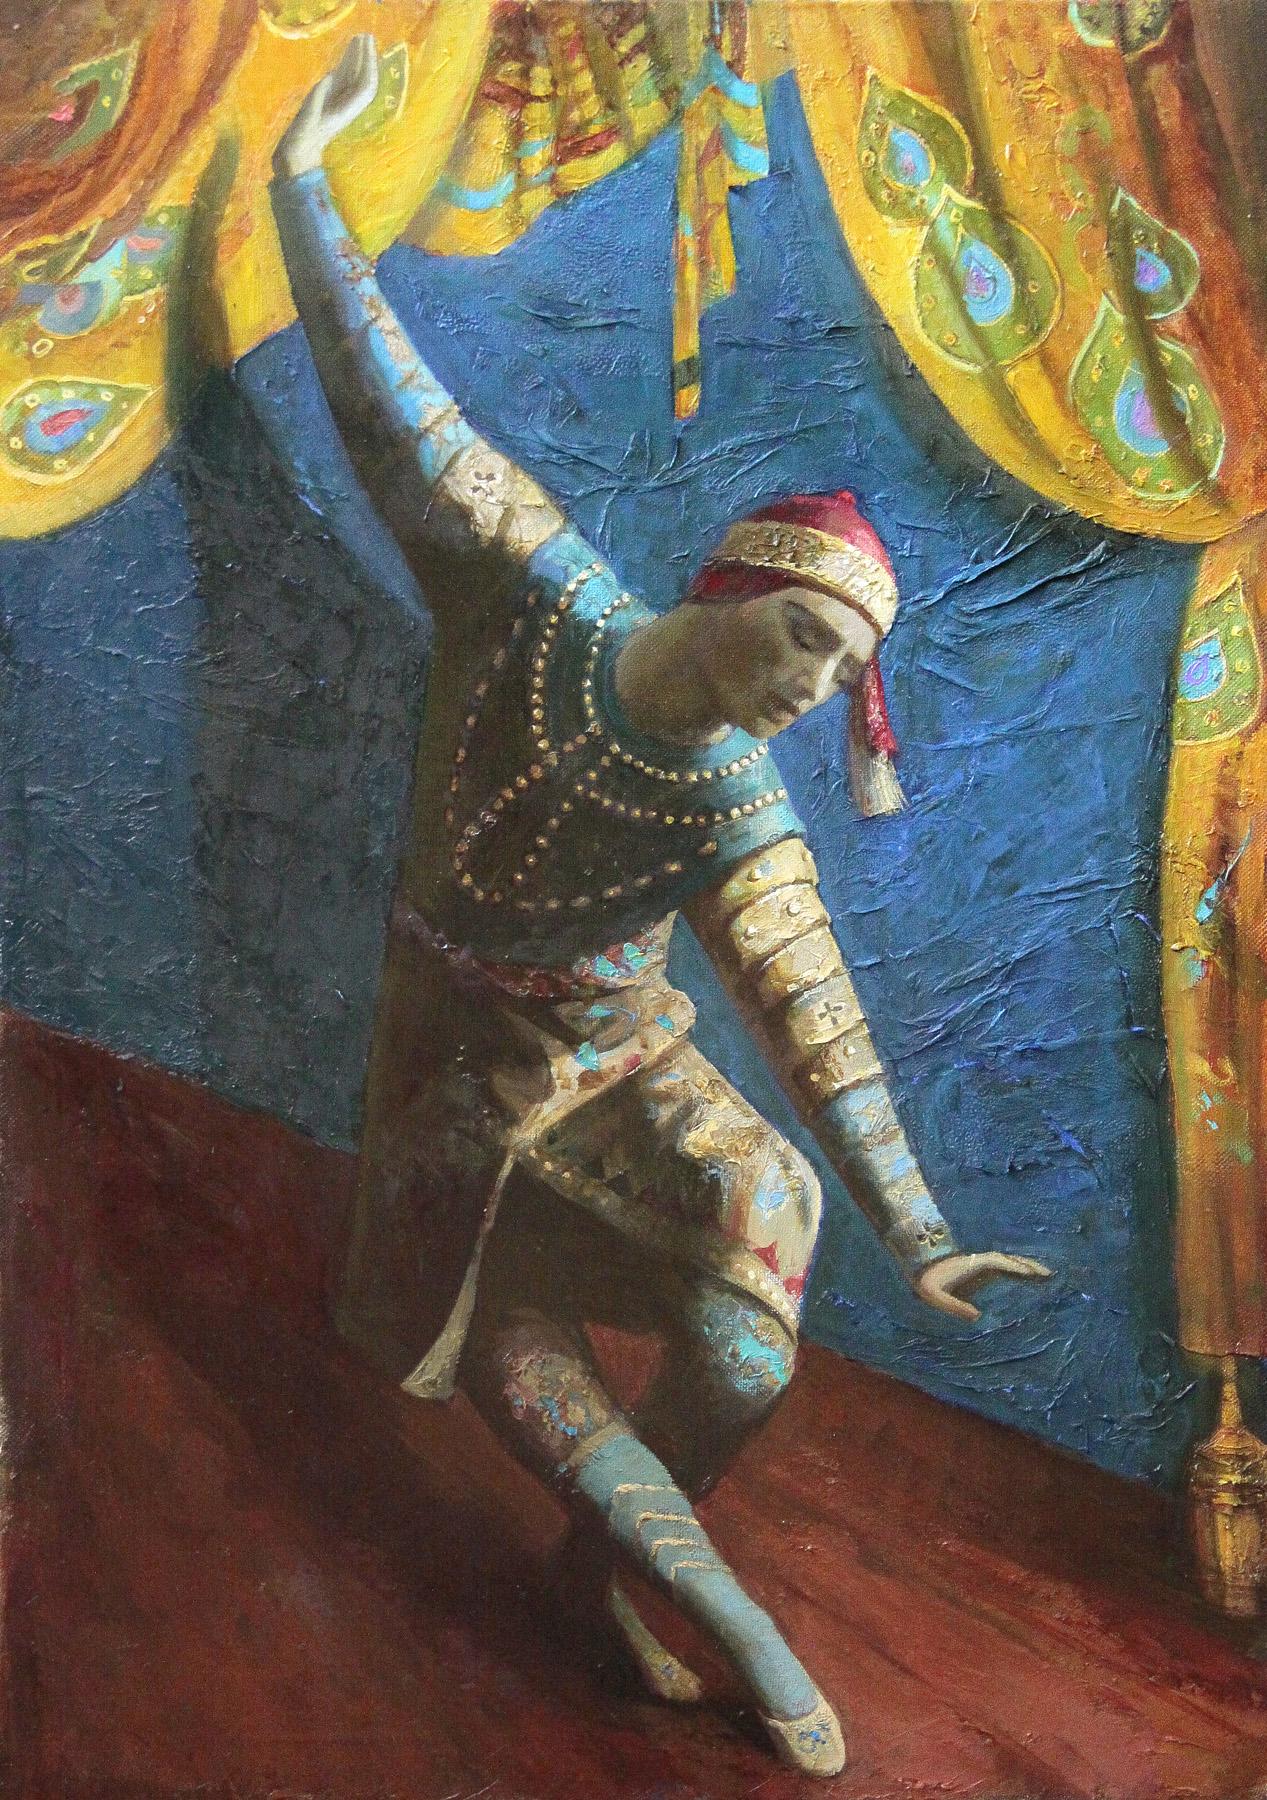 Vaslav Nijinsky. 音乐会室. 暹罗舞蹈. Original modern art painting